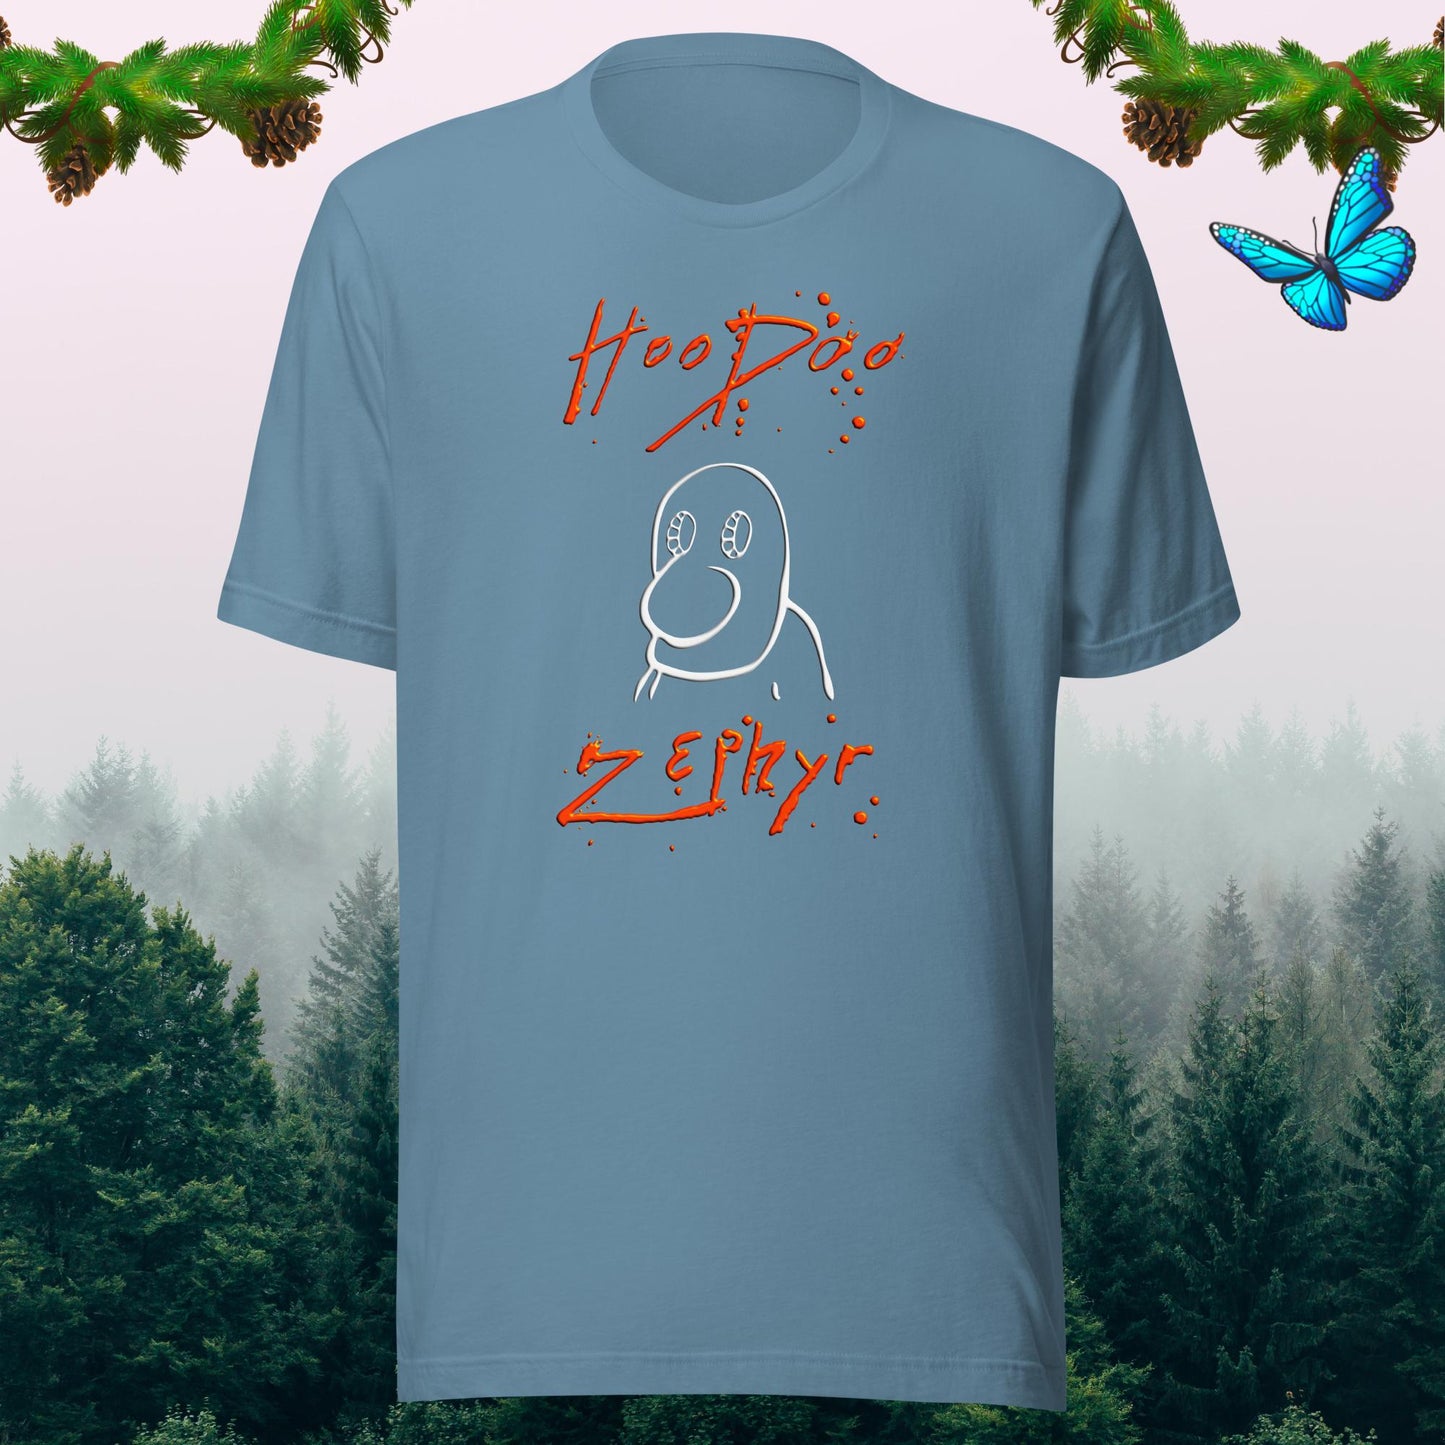 hoodoo zephyr aberdeenshire band t-shirt light blue by stormseye design